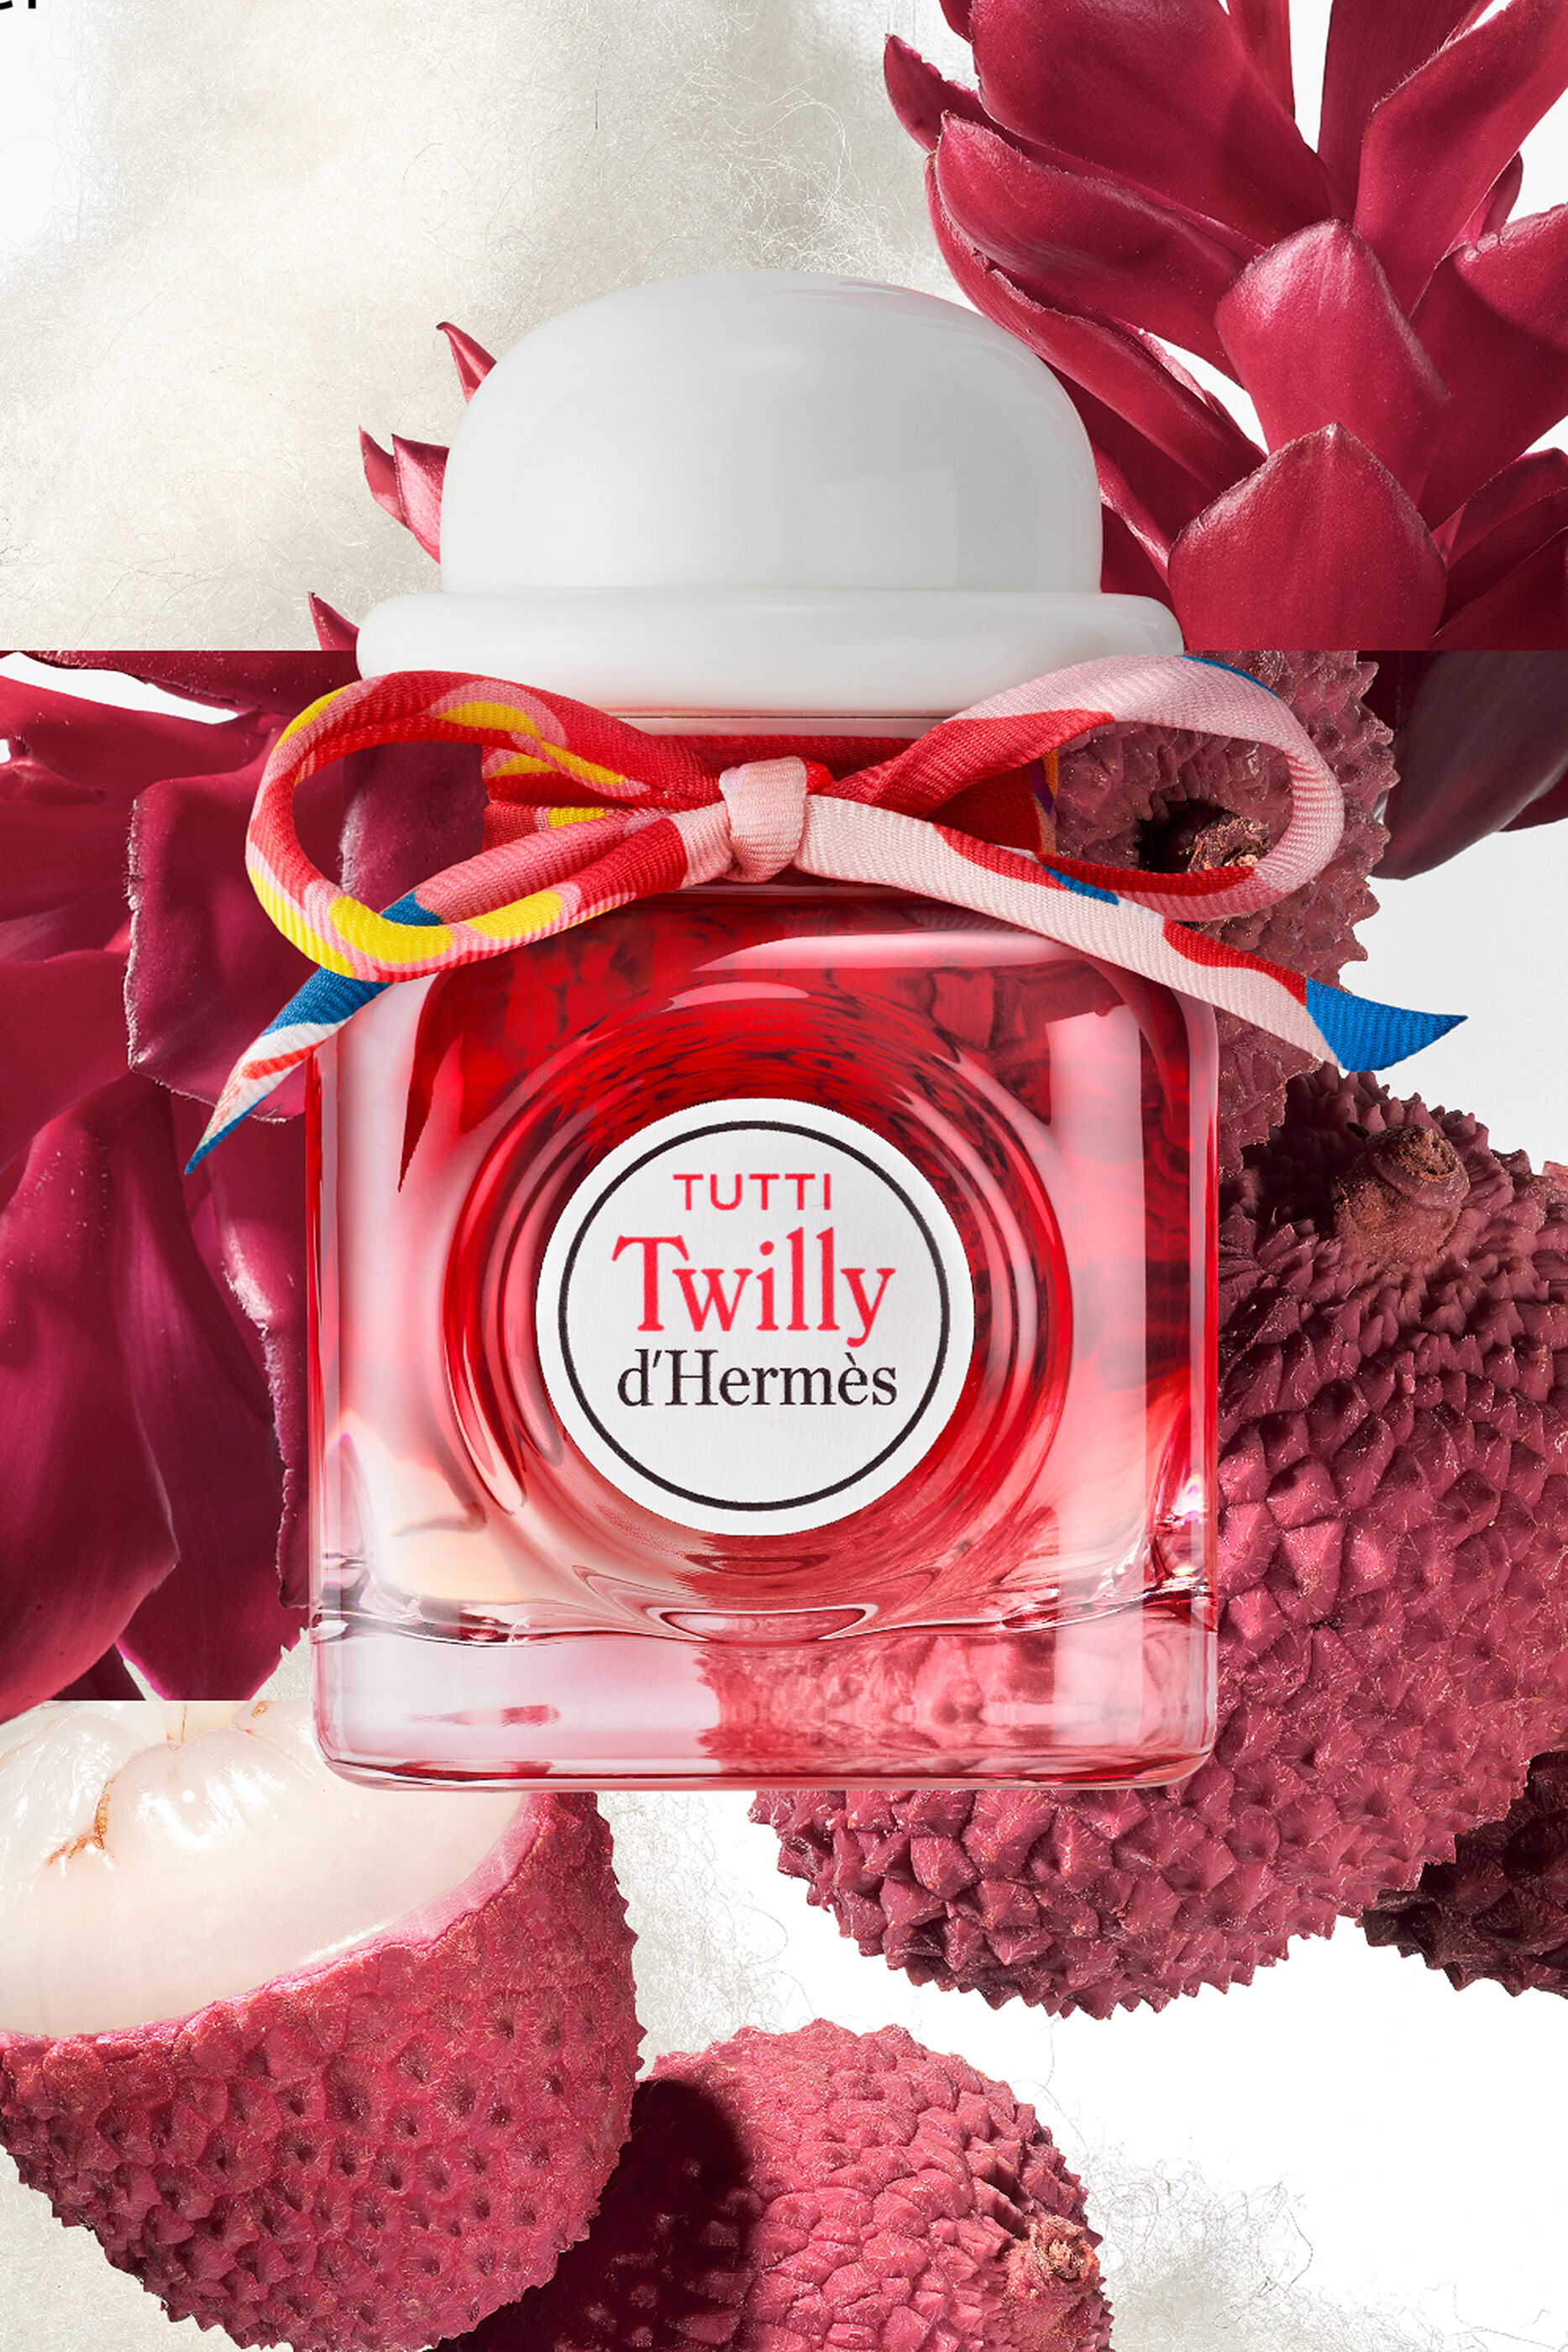 Tutti Twilly d’Hermès, Eau de Parfum